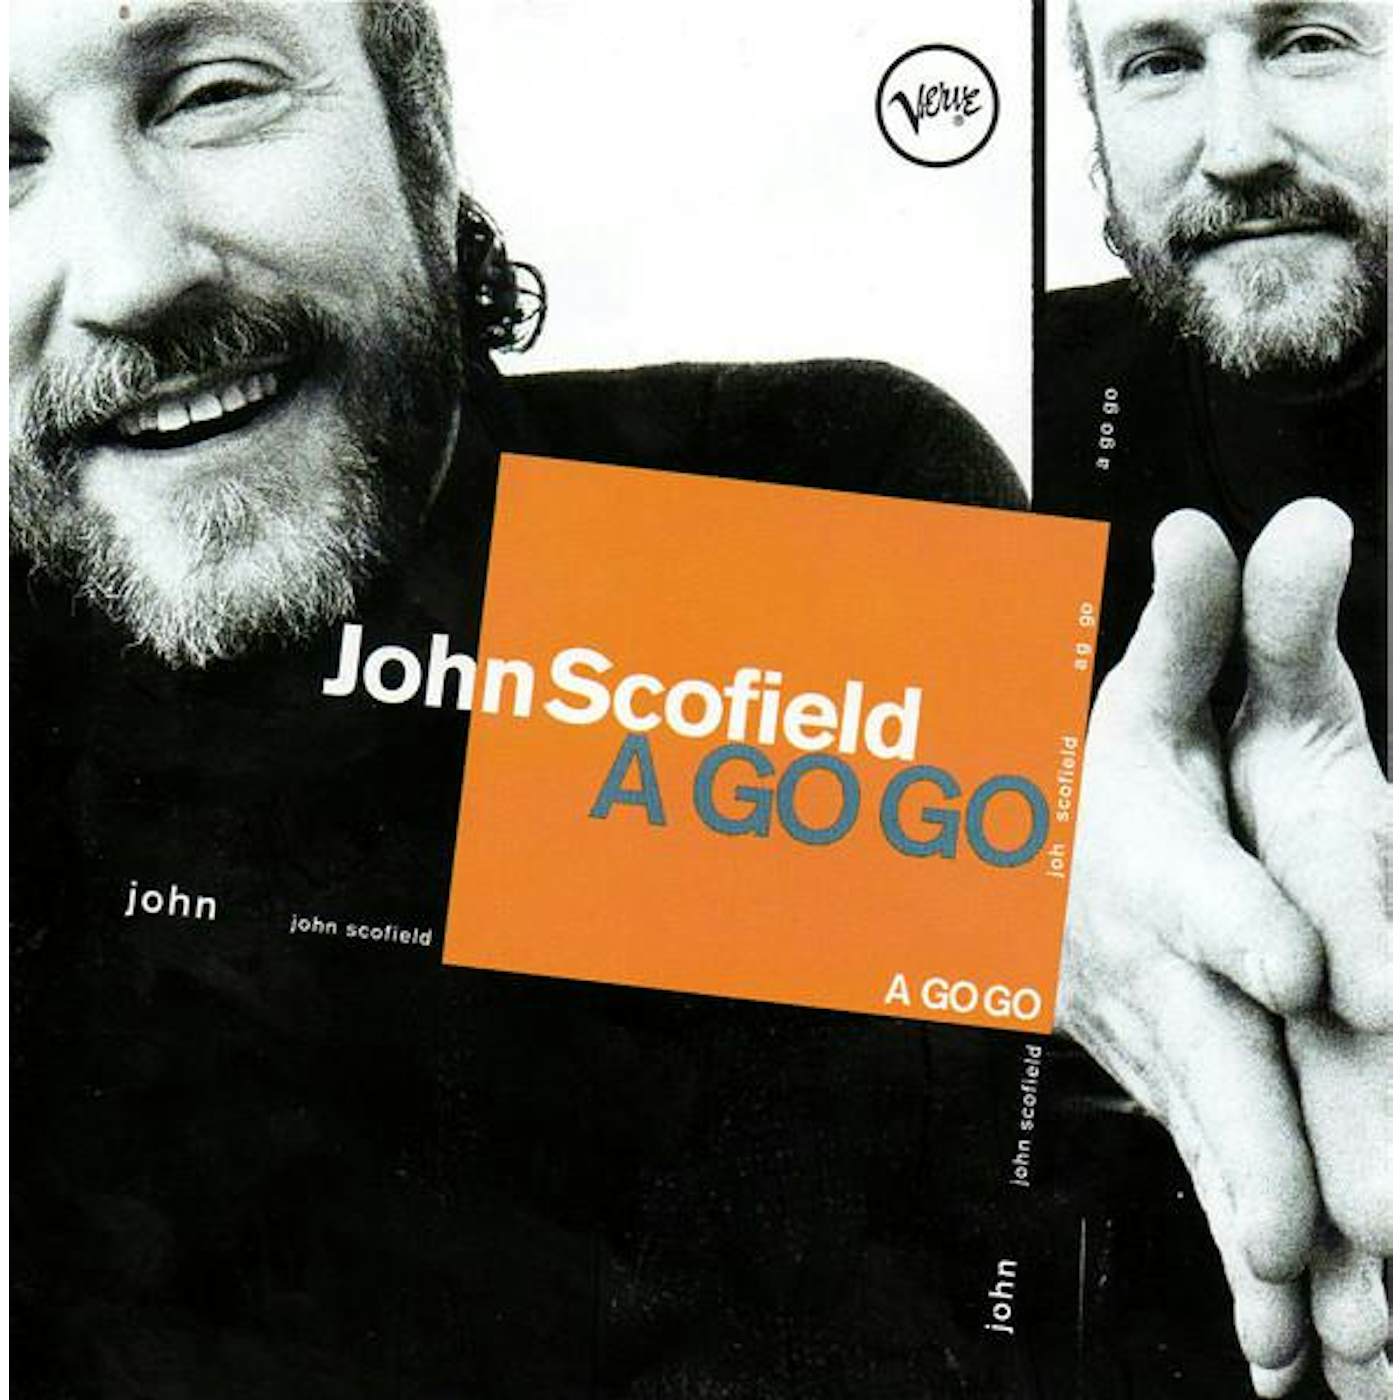 John Scofield GO GO CD